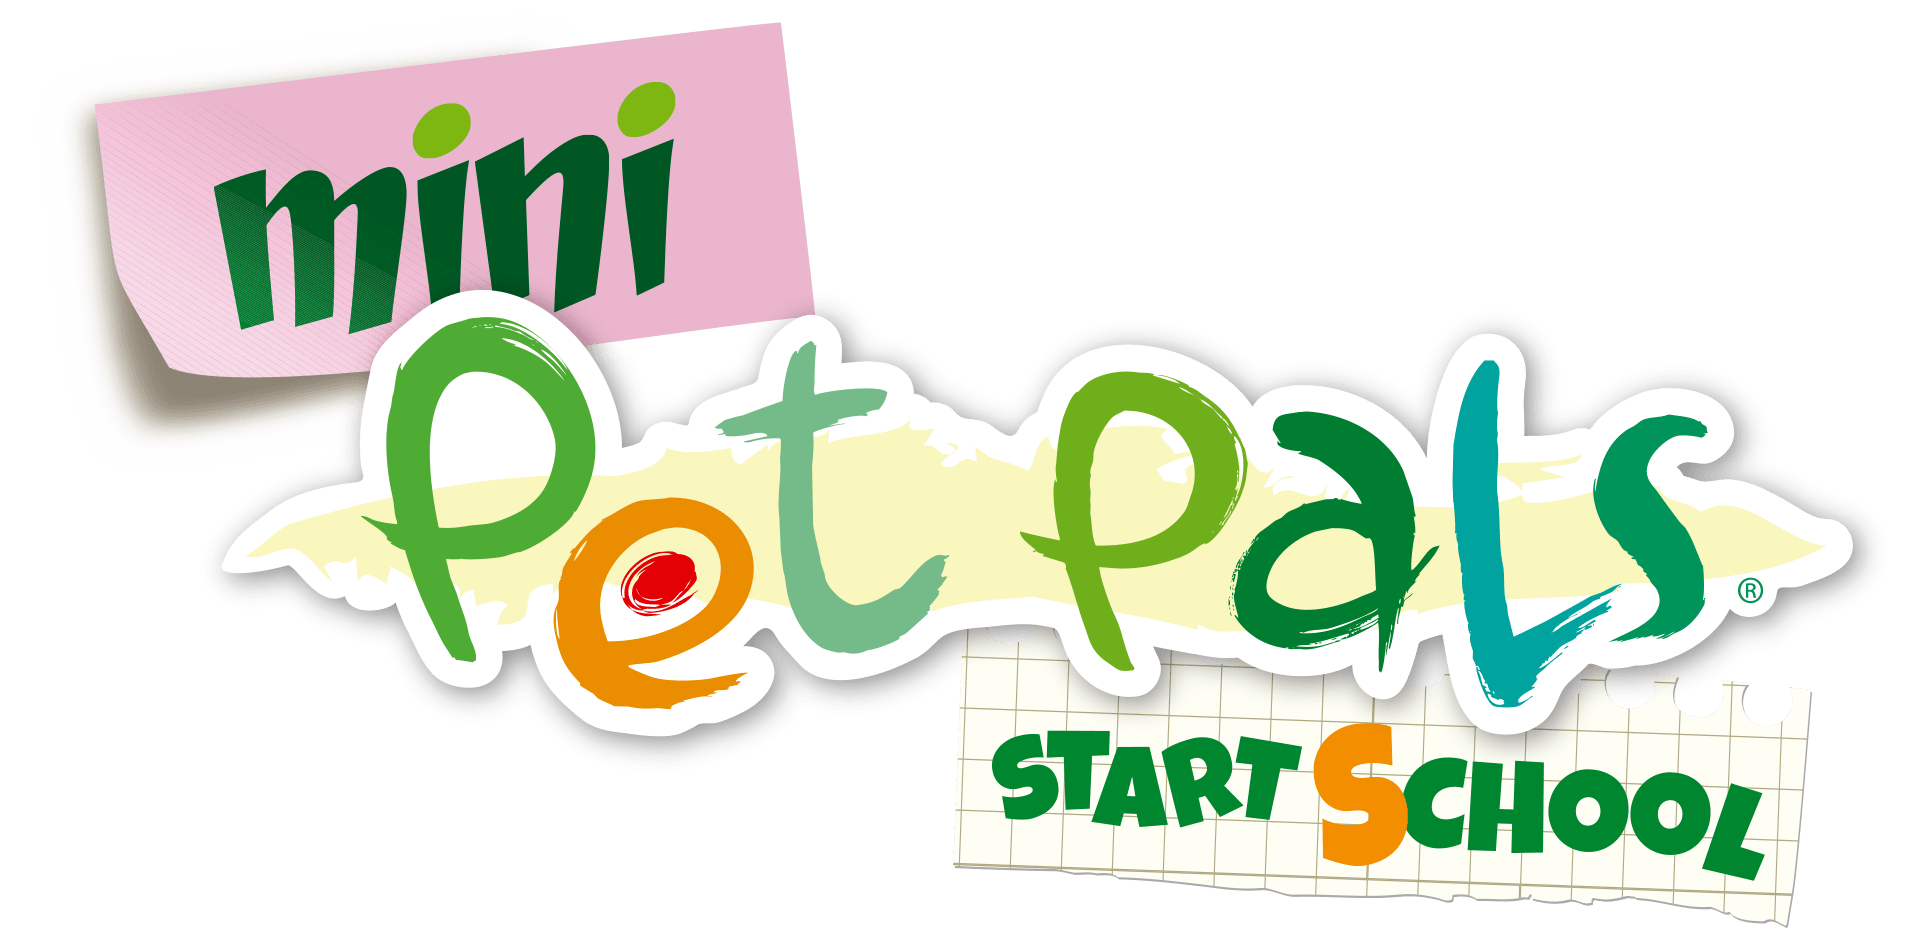 pet pals start school logo gifs